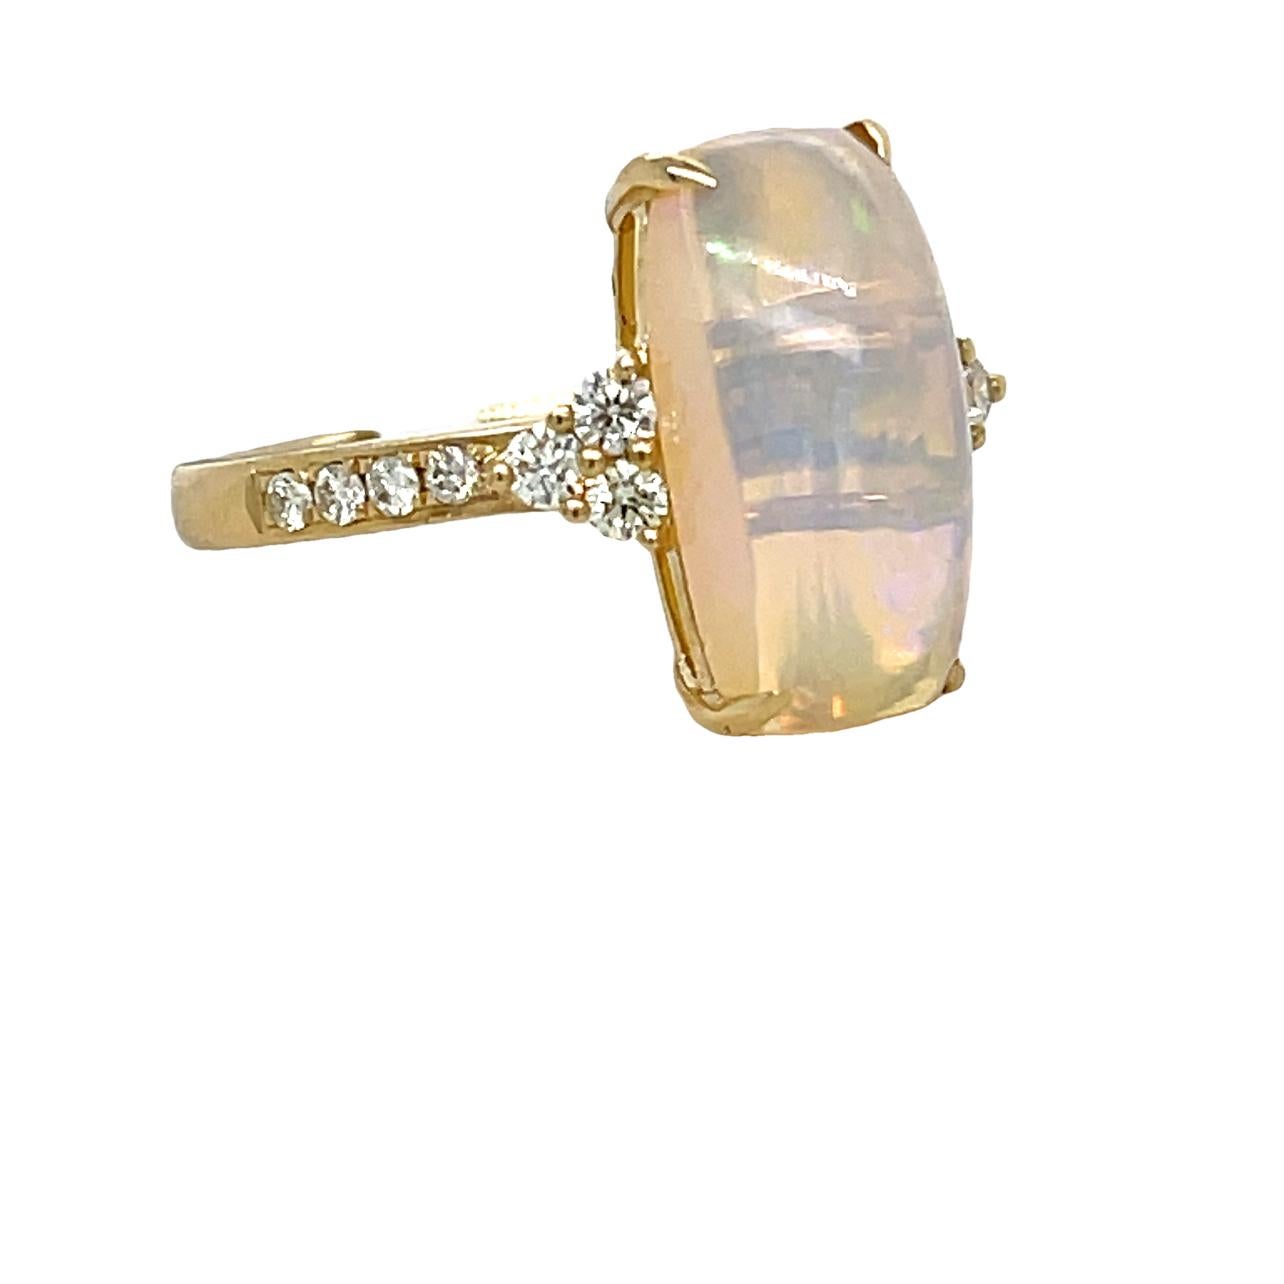 Cette magnifique bague est ornée d'une opale éthiopienne vibrante de 14,5x7,5 et de 14 diamants ronds taillés en brillant sur le côté et le long de la tige. L'opale est sertie sur 4 anneaux en or jaune 14K. Cette magnifique bague fera parler d'elle